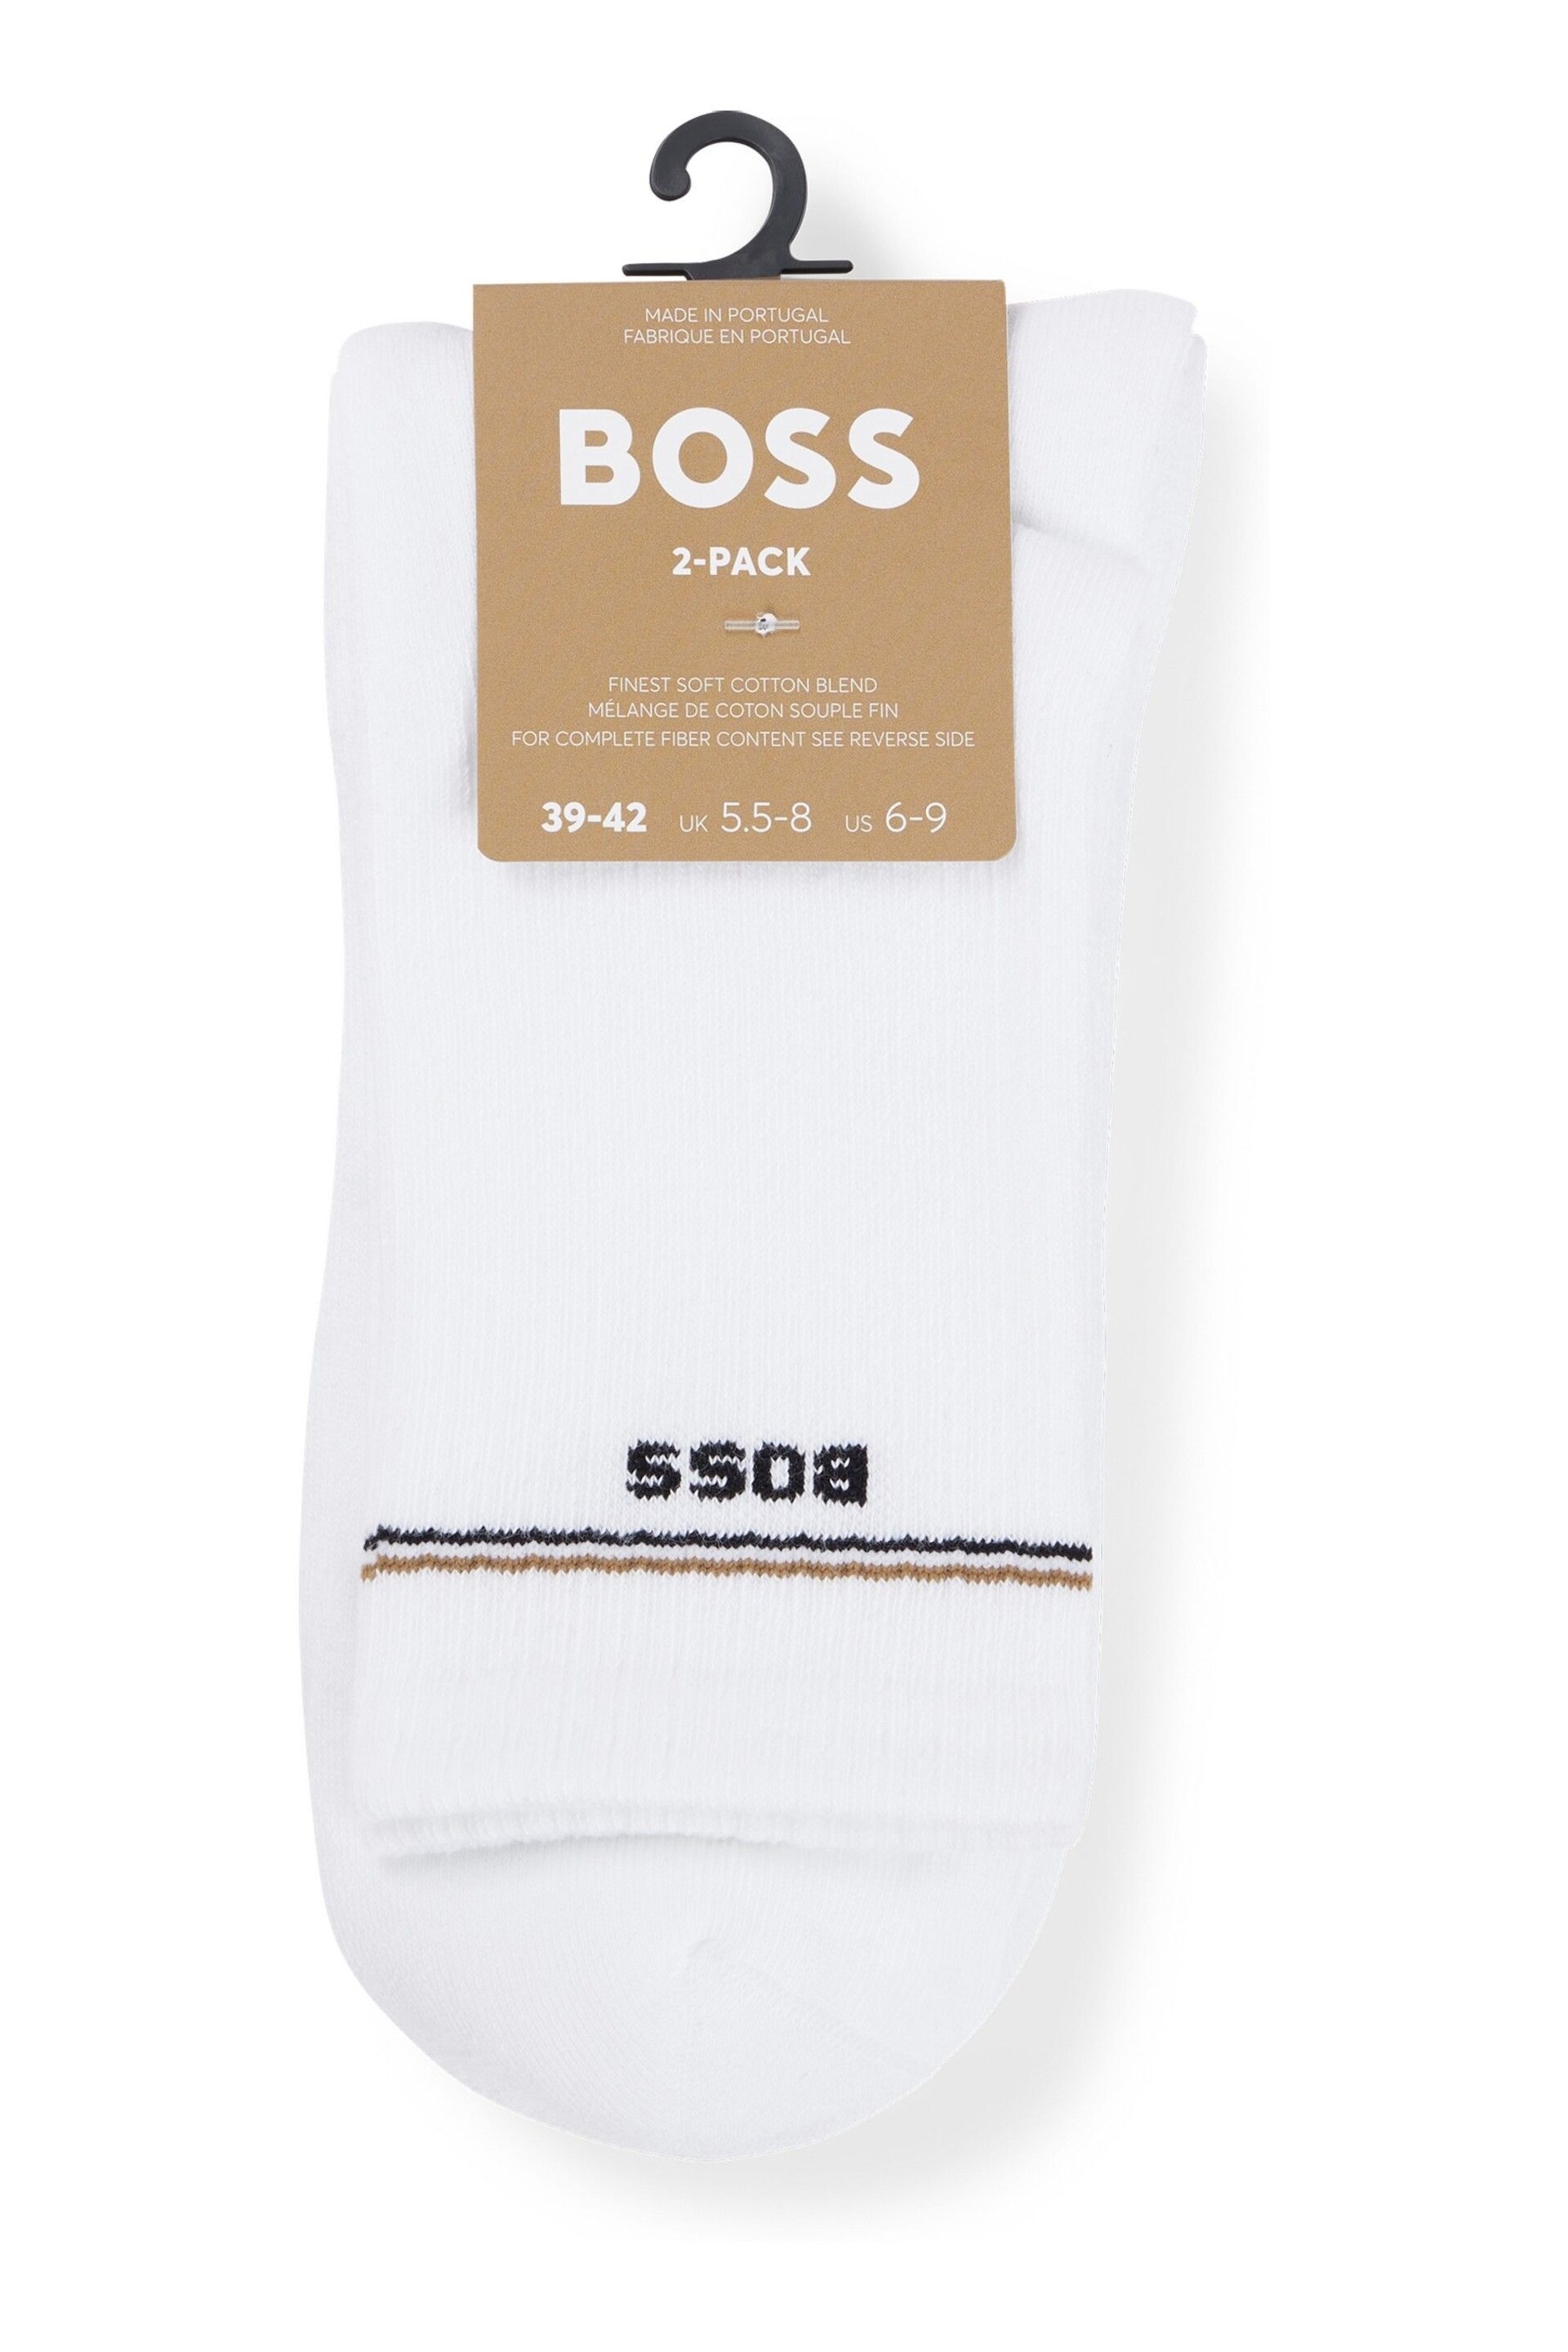 BOSS White Iconic Socks 2 Pack - Image 2 of 3